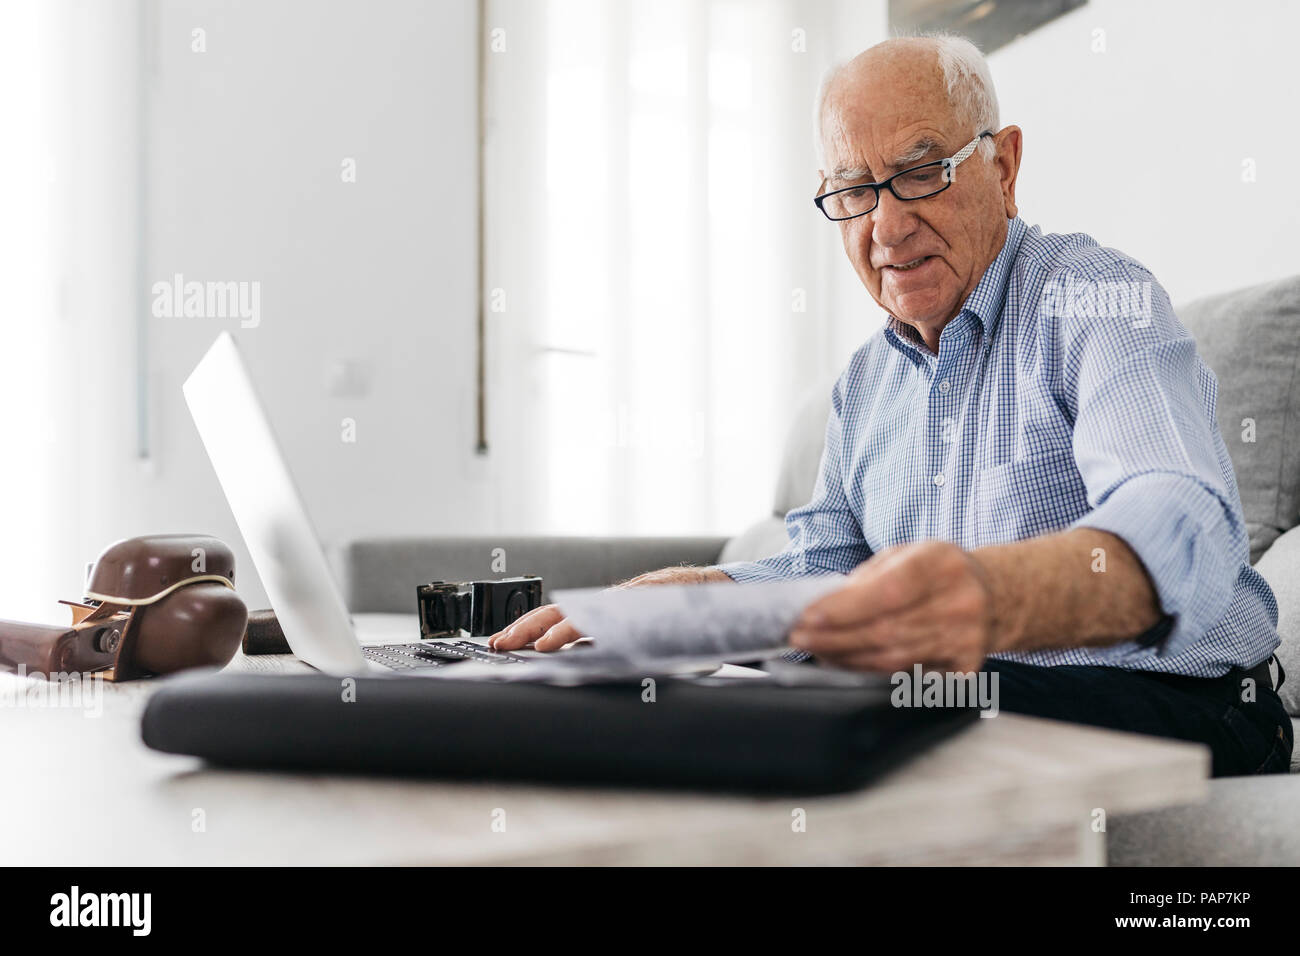 Älterer Mann bei der Arbeit mit einem Computer und seinen alten Fotokameras und alte Fotos Stockfoto